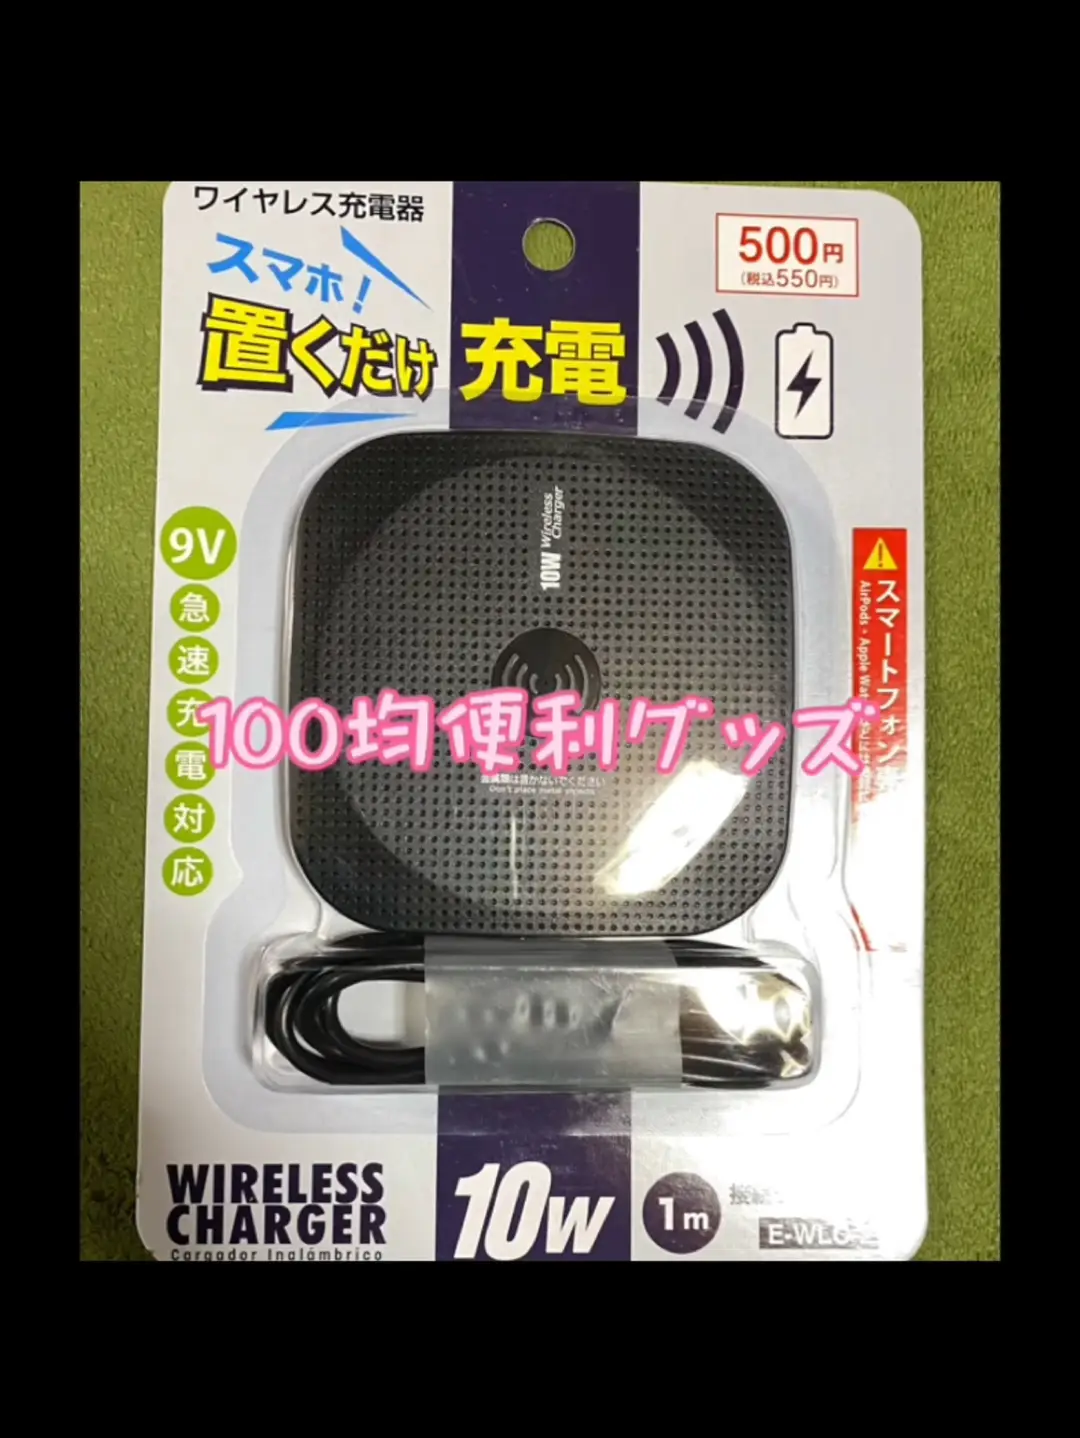 【100均便利グッズ】ワイヤレス充電器の画像 (1枚目)